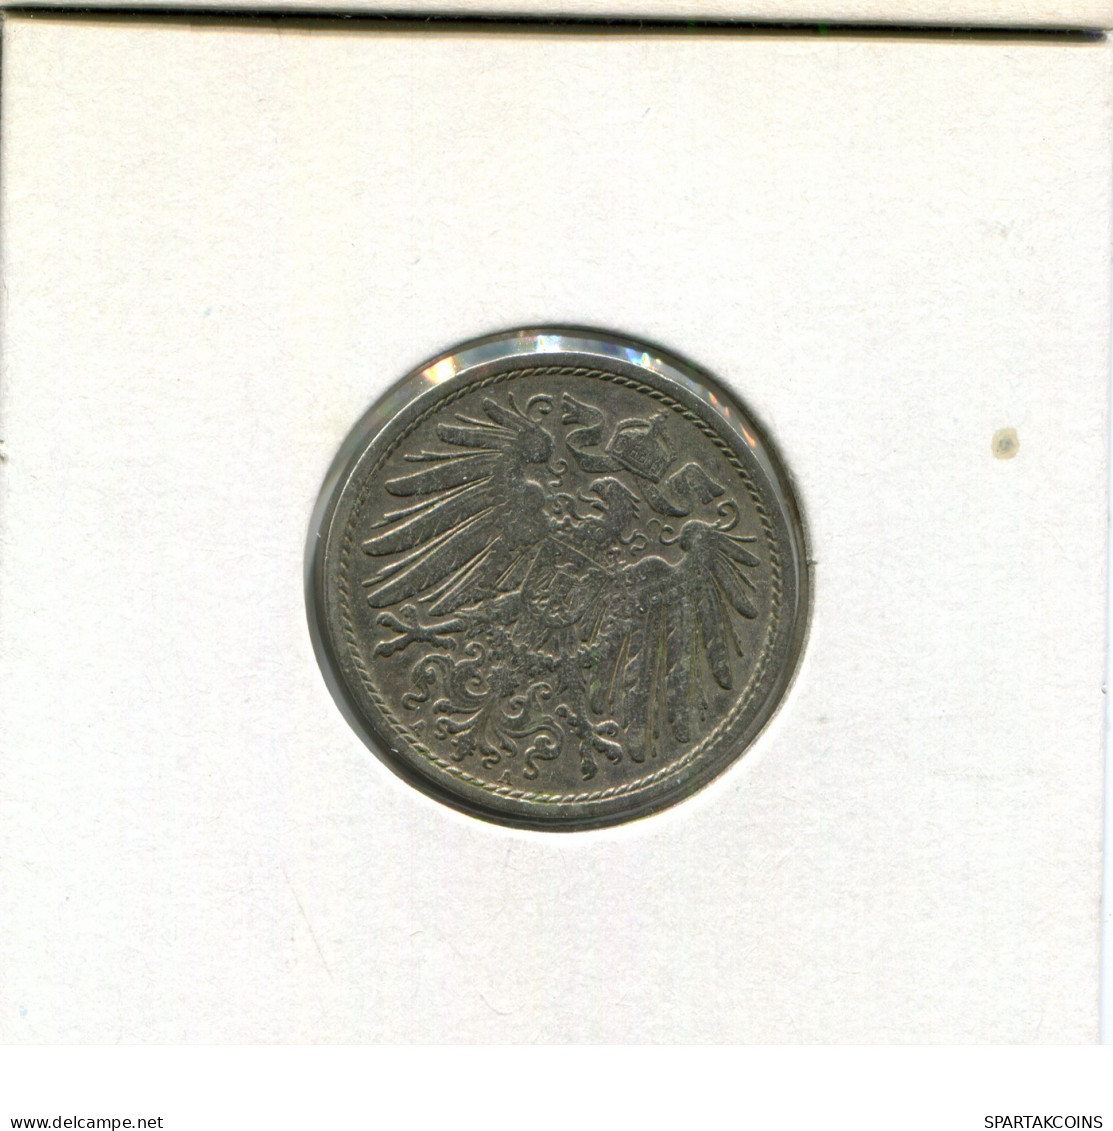 10 PFENNIG 1901 A GERMANY Coin #AW912.U.A - 10 Pfennig